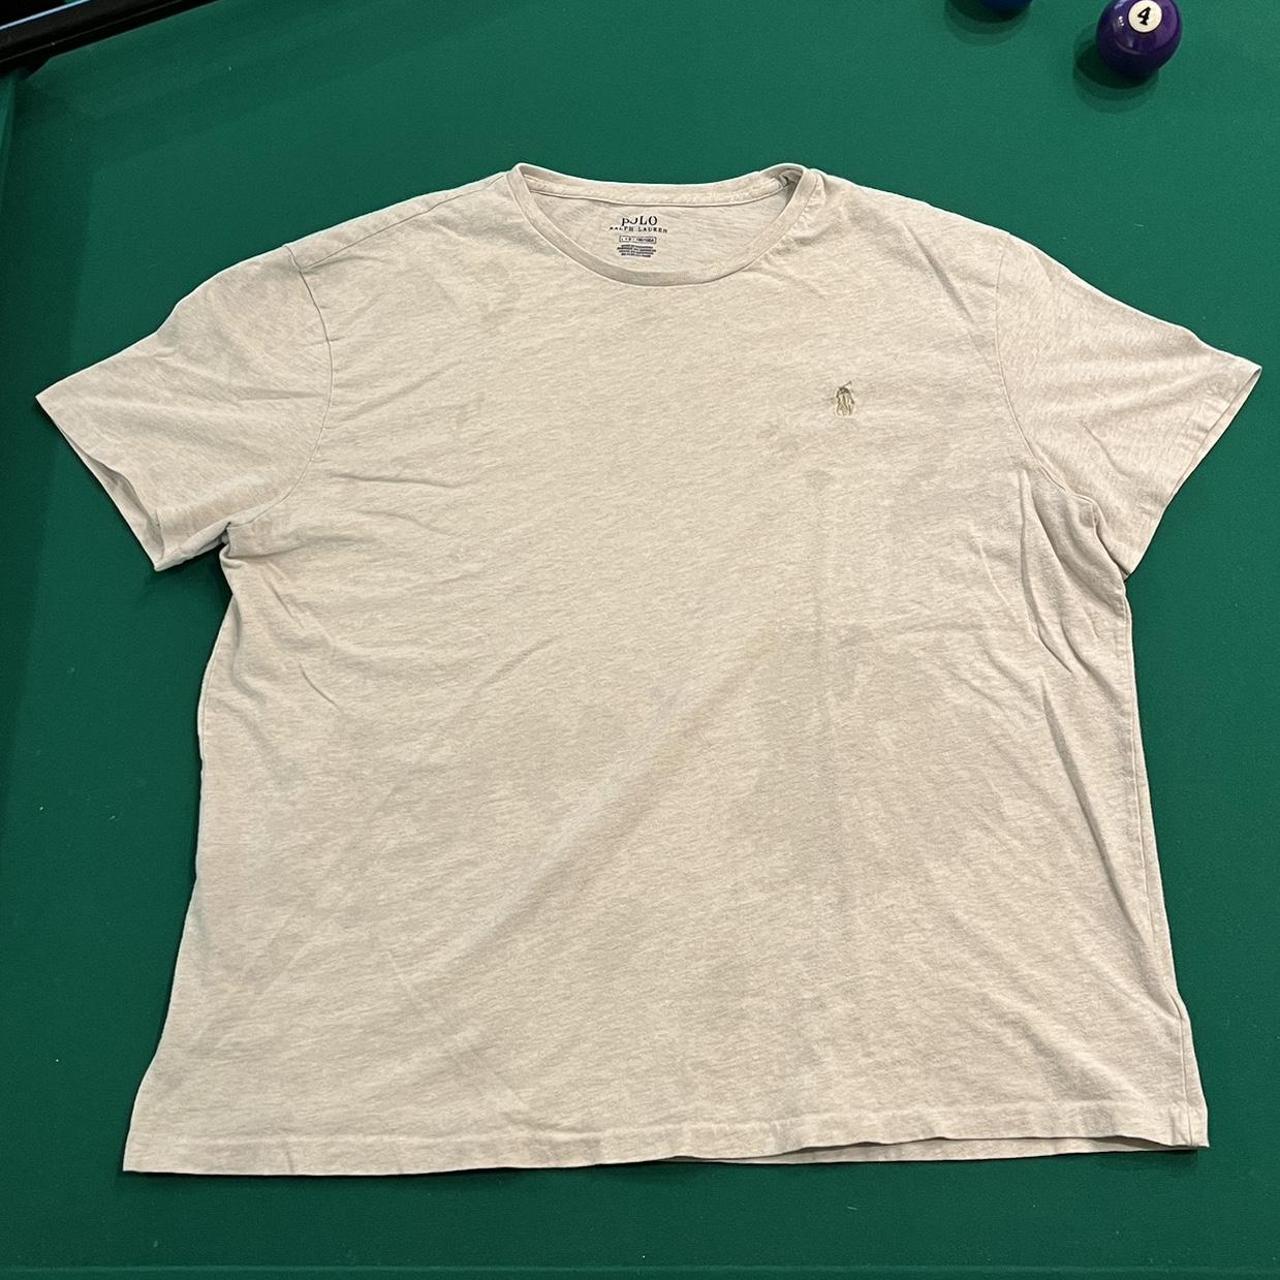 Vintage polo Ralph Lauren t shirt Has stains - Depop